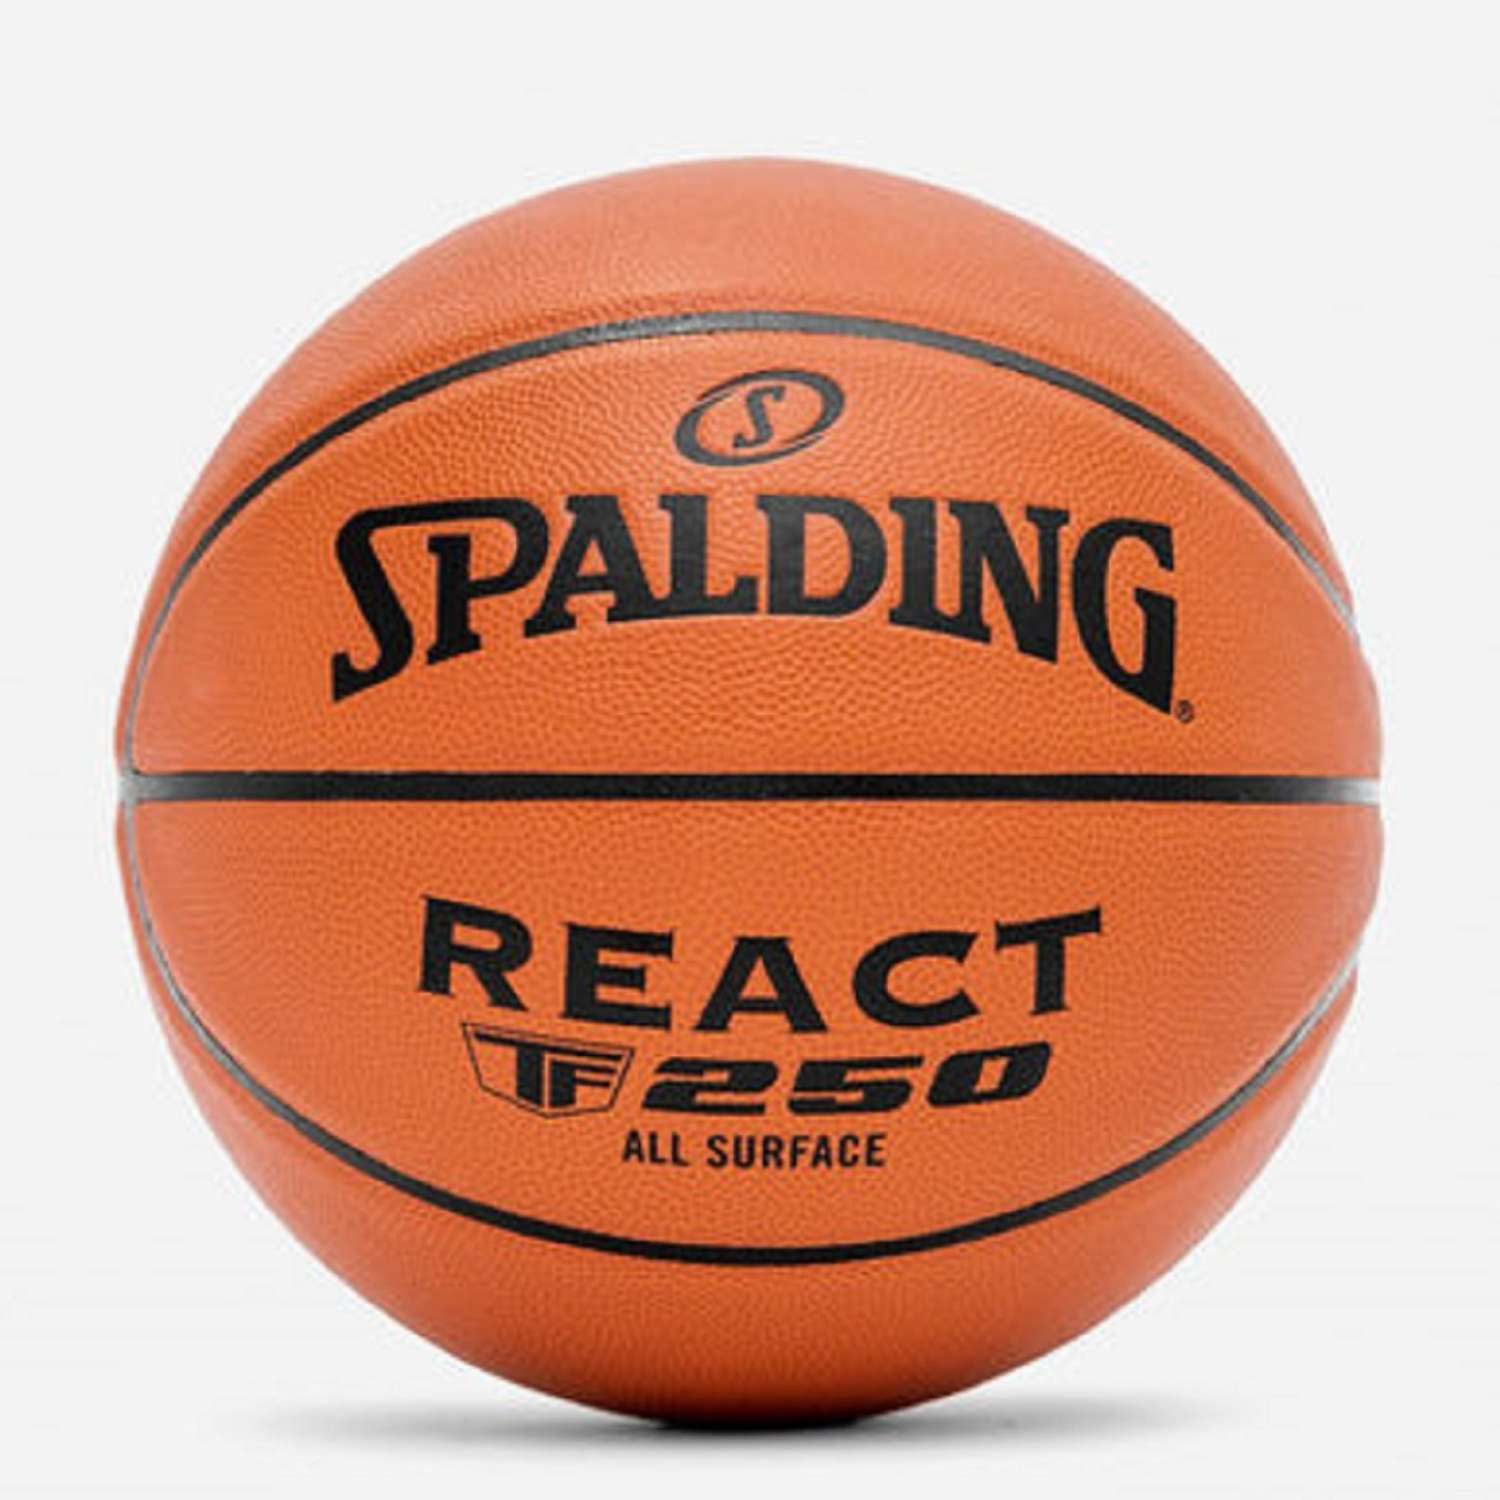 Баскетбольный мяч SPALDING Spalding react tf 250 Fiba sz7 - фото 1